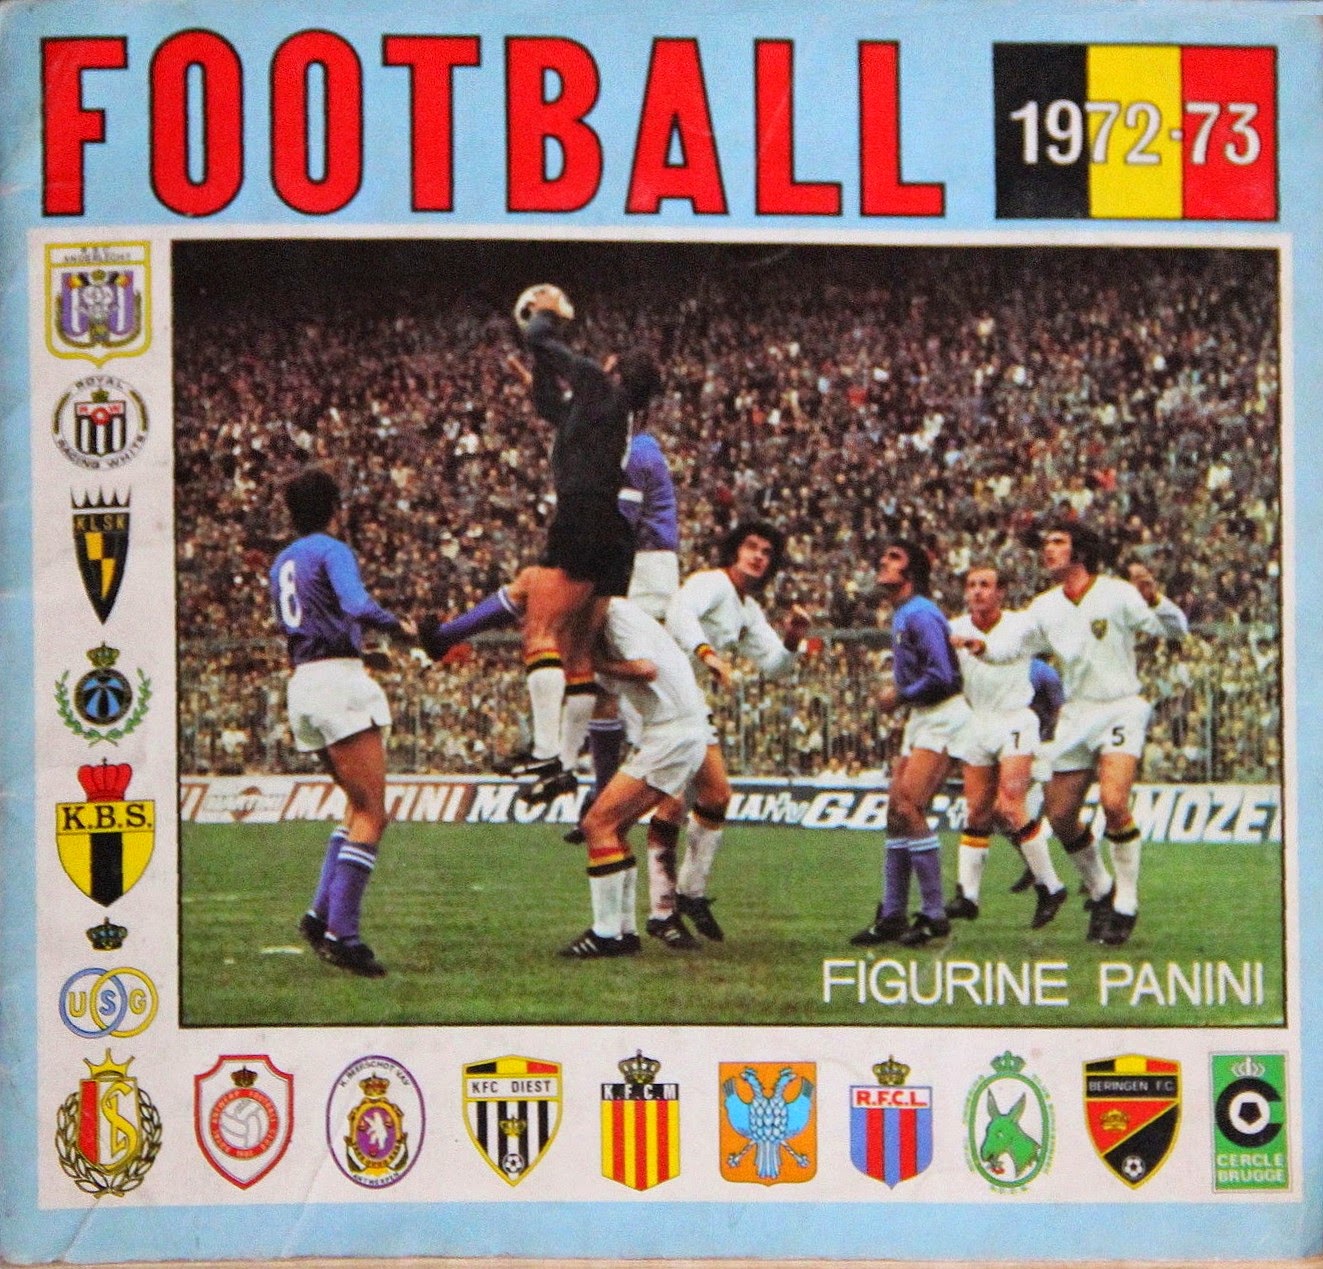 Rec VAN GUCHT BELGIO-FOOTBALL 76-PANINI-Figurina n.48 BEERSCHOT